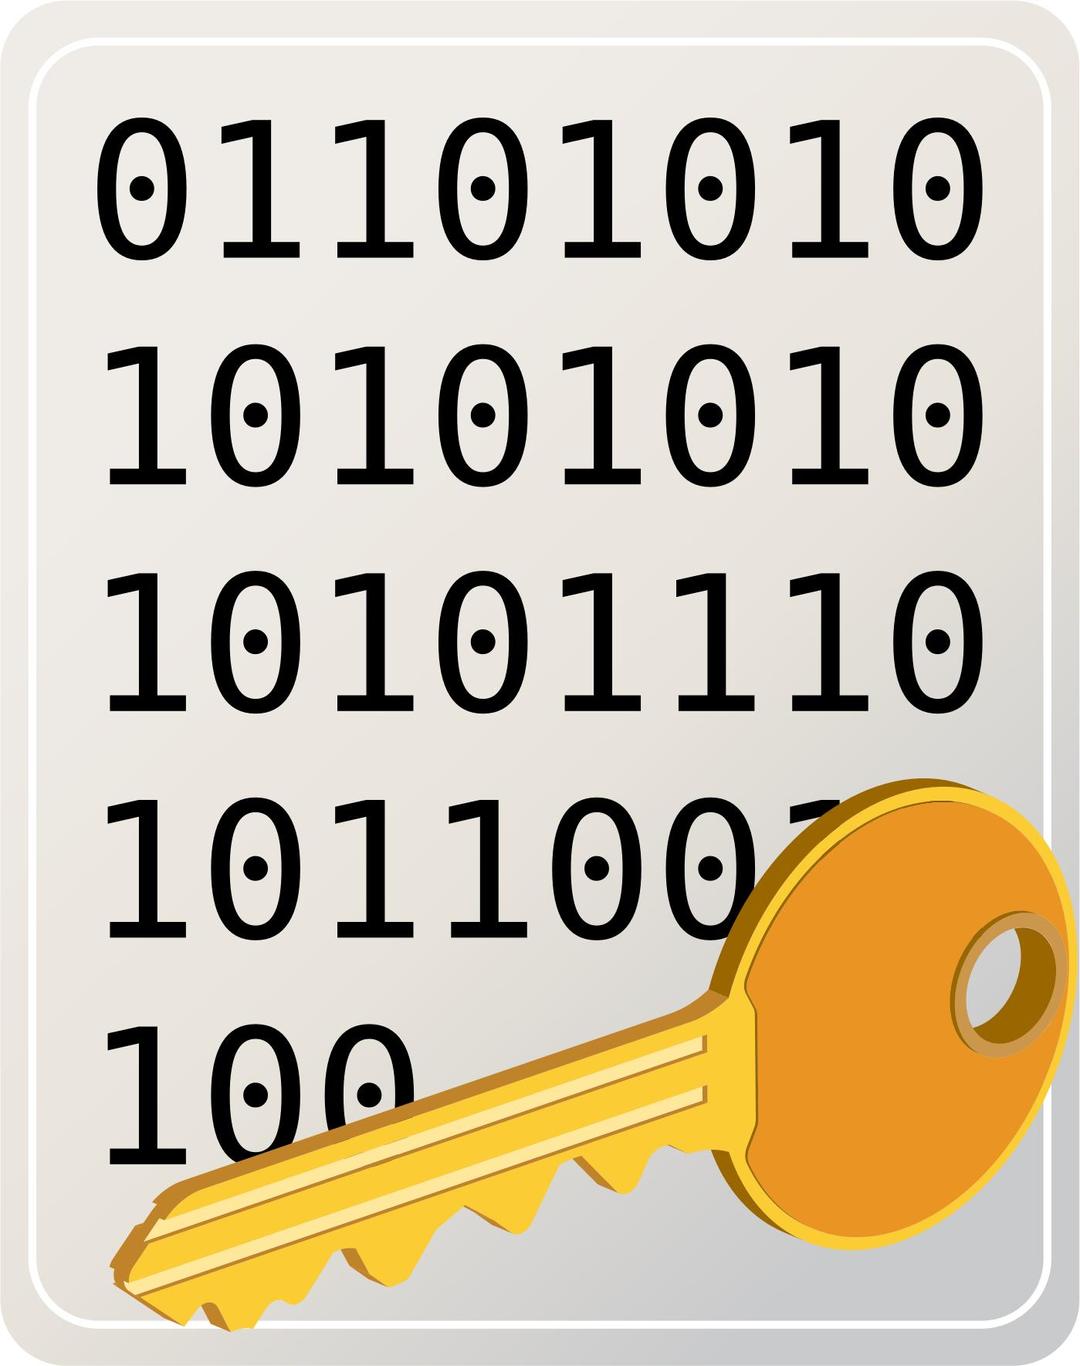 Encrypted file png transparent